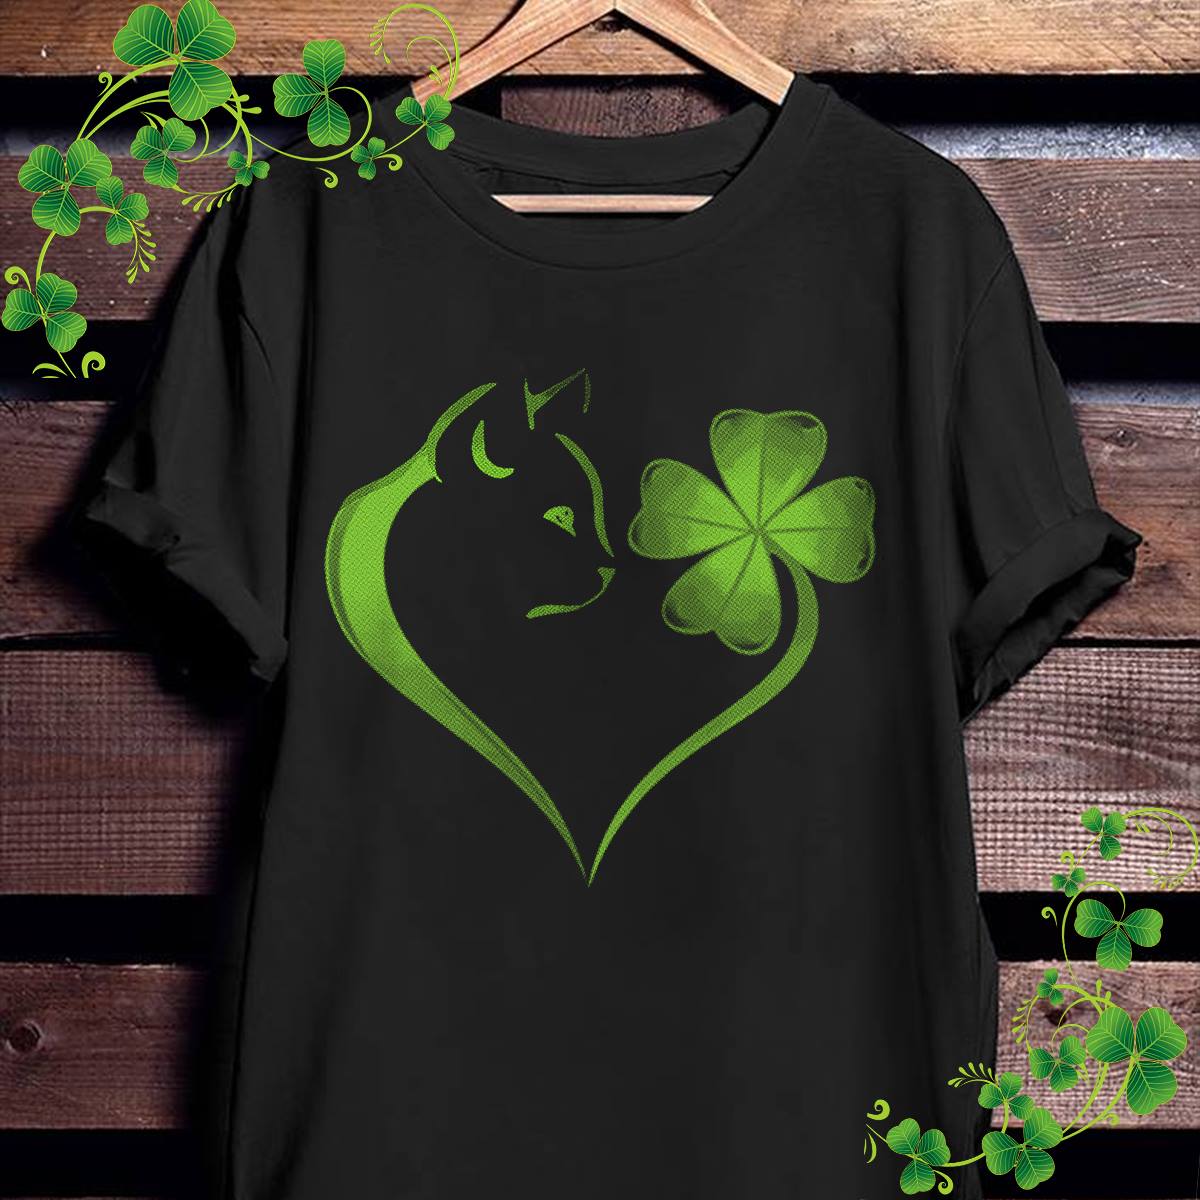 Cat St Patrick's Day, Shamrock Shirt, Luck Of The Irish, Heart Shamrock Shirt, Clover Shirt